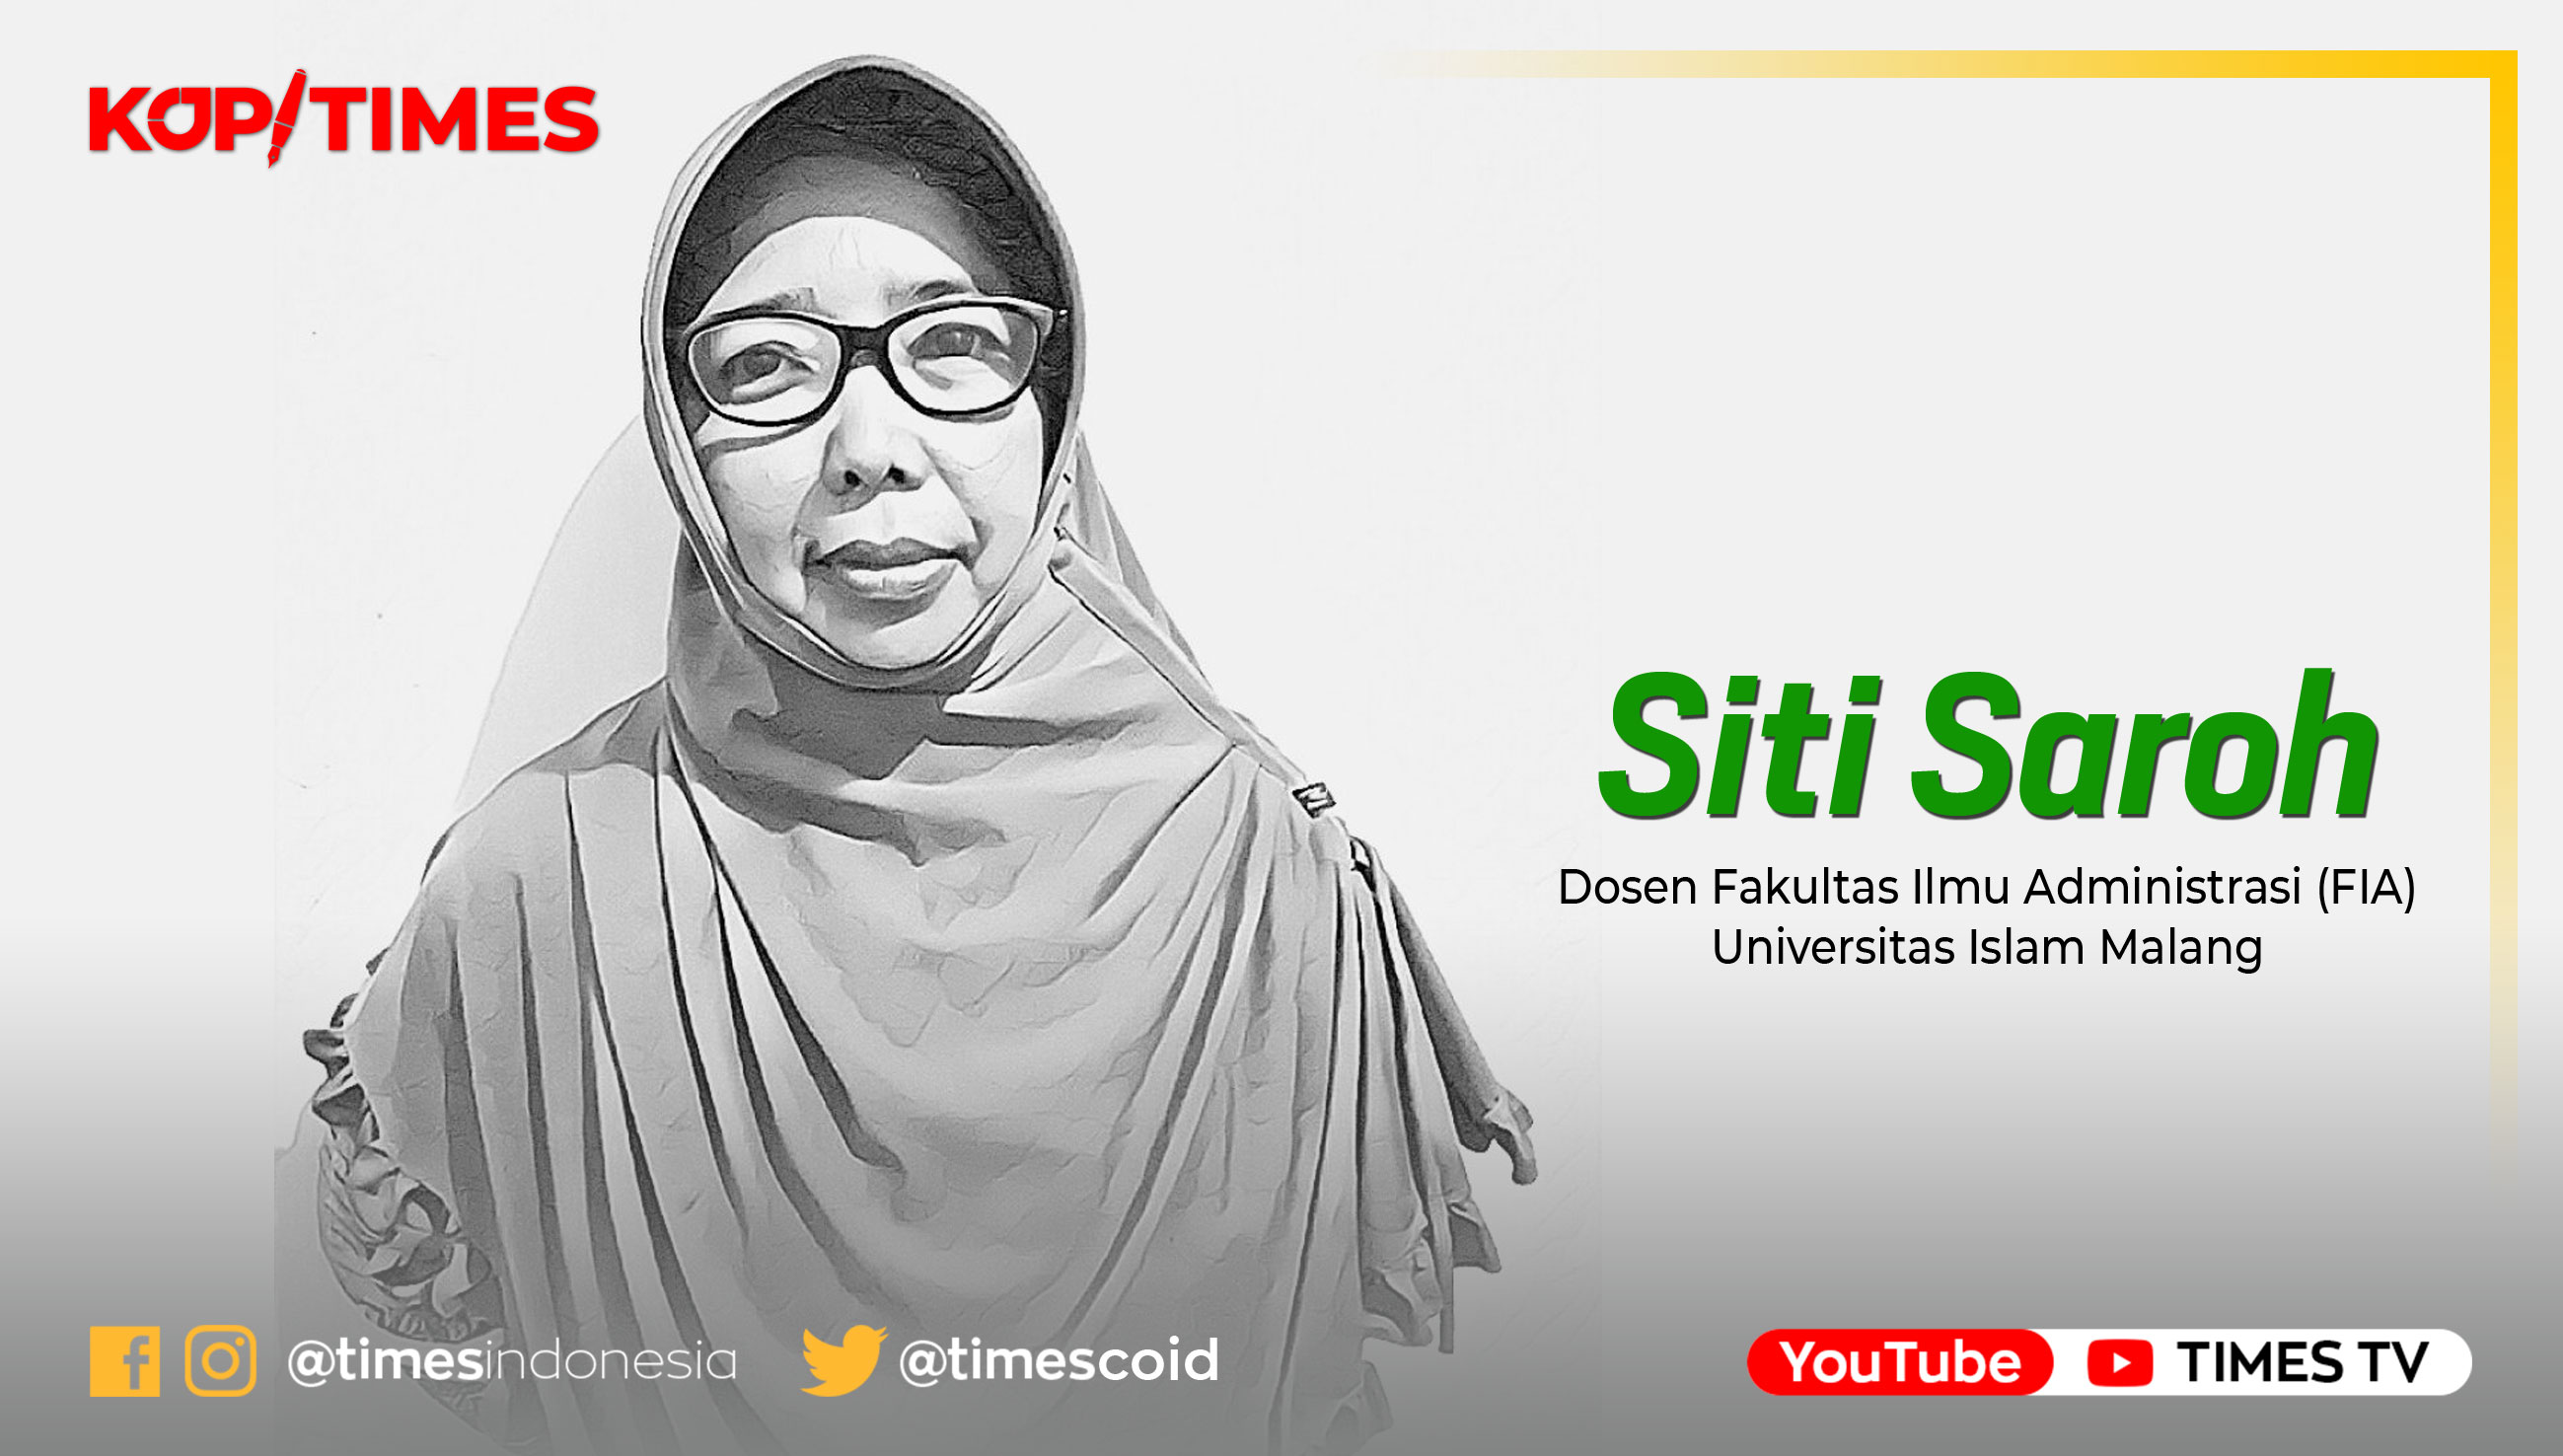 Siti Saroh, Dosen Fakultas Ilmu Administrasi (FIA) Universitas Islam Malang (UNISMA).